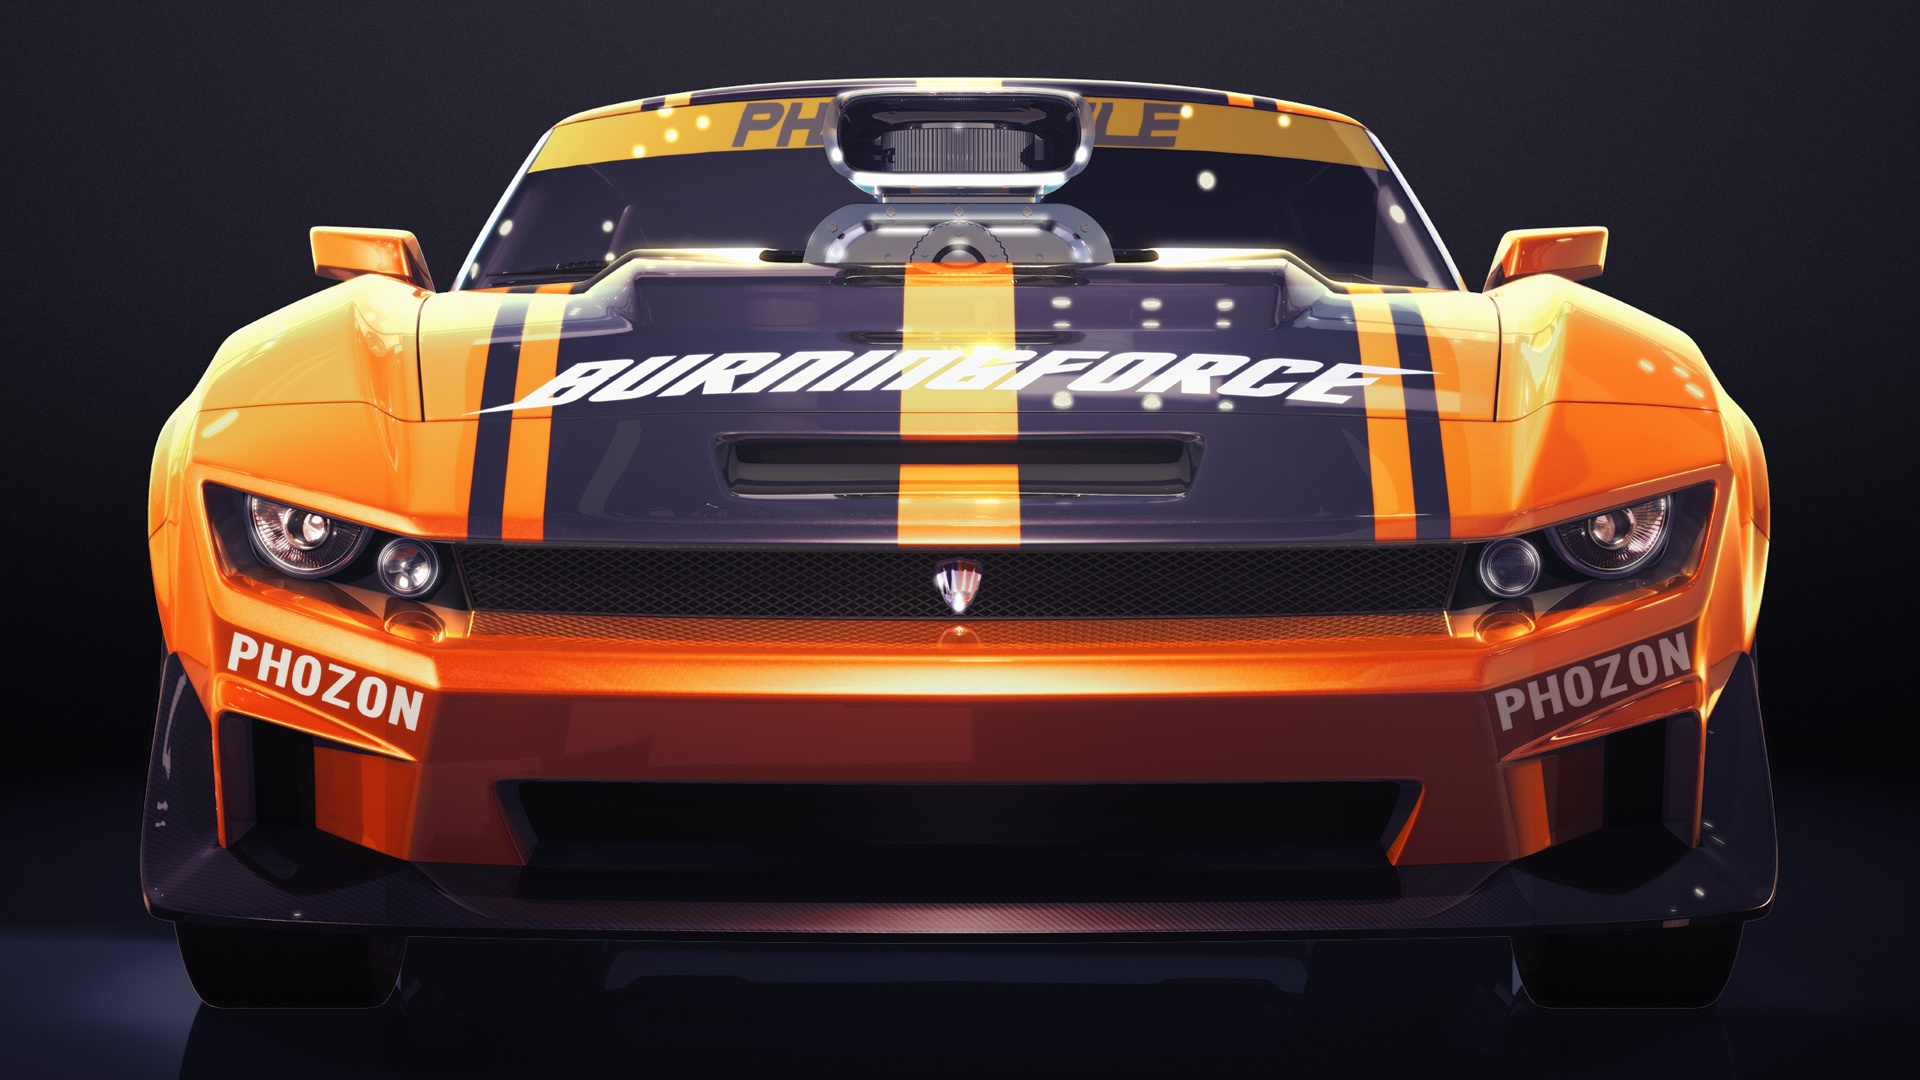 115+  Background Keren: Ridge Racer 3d Wallpapers